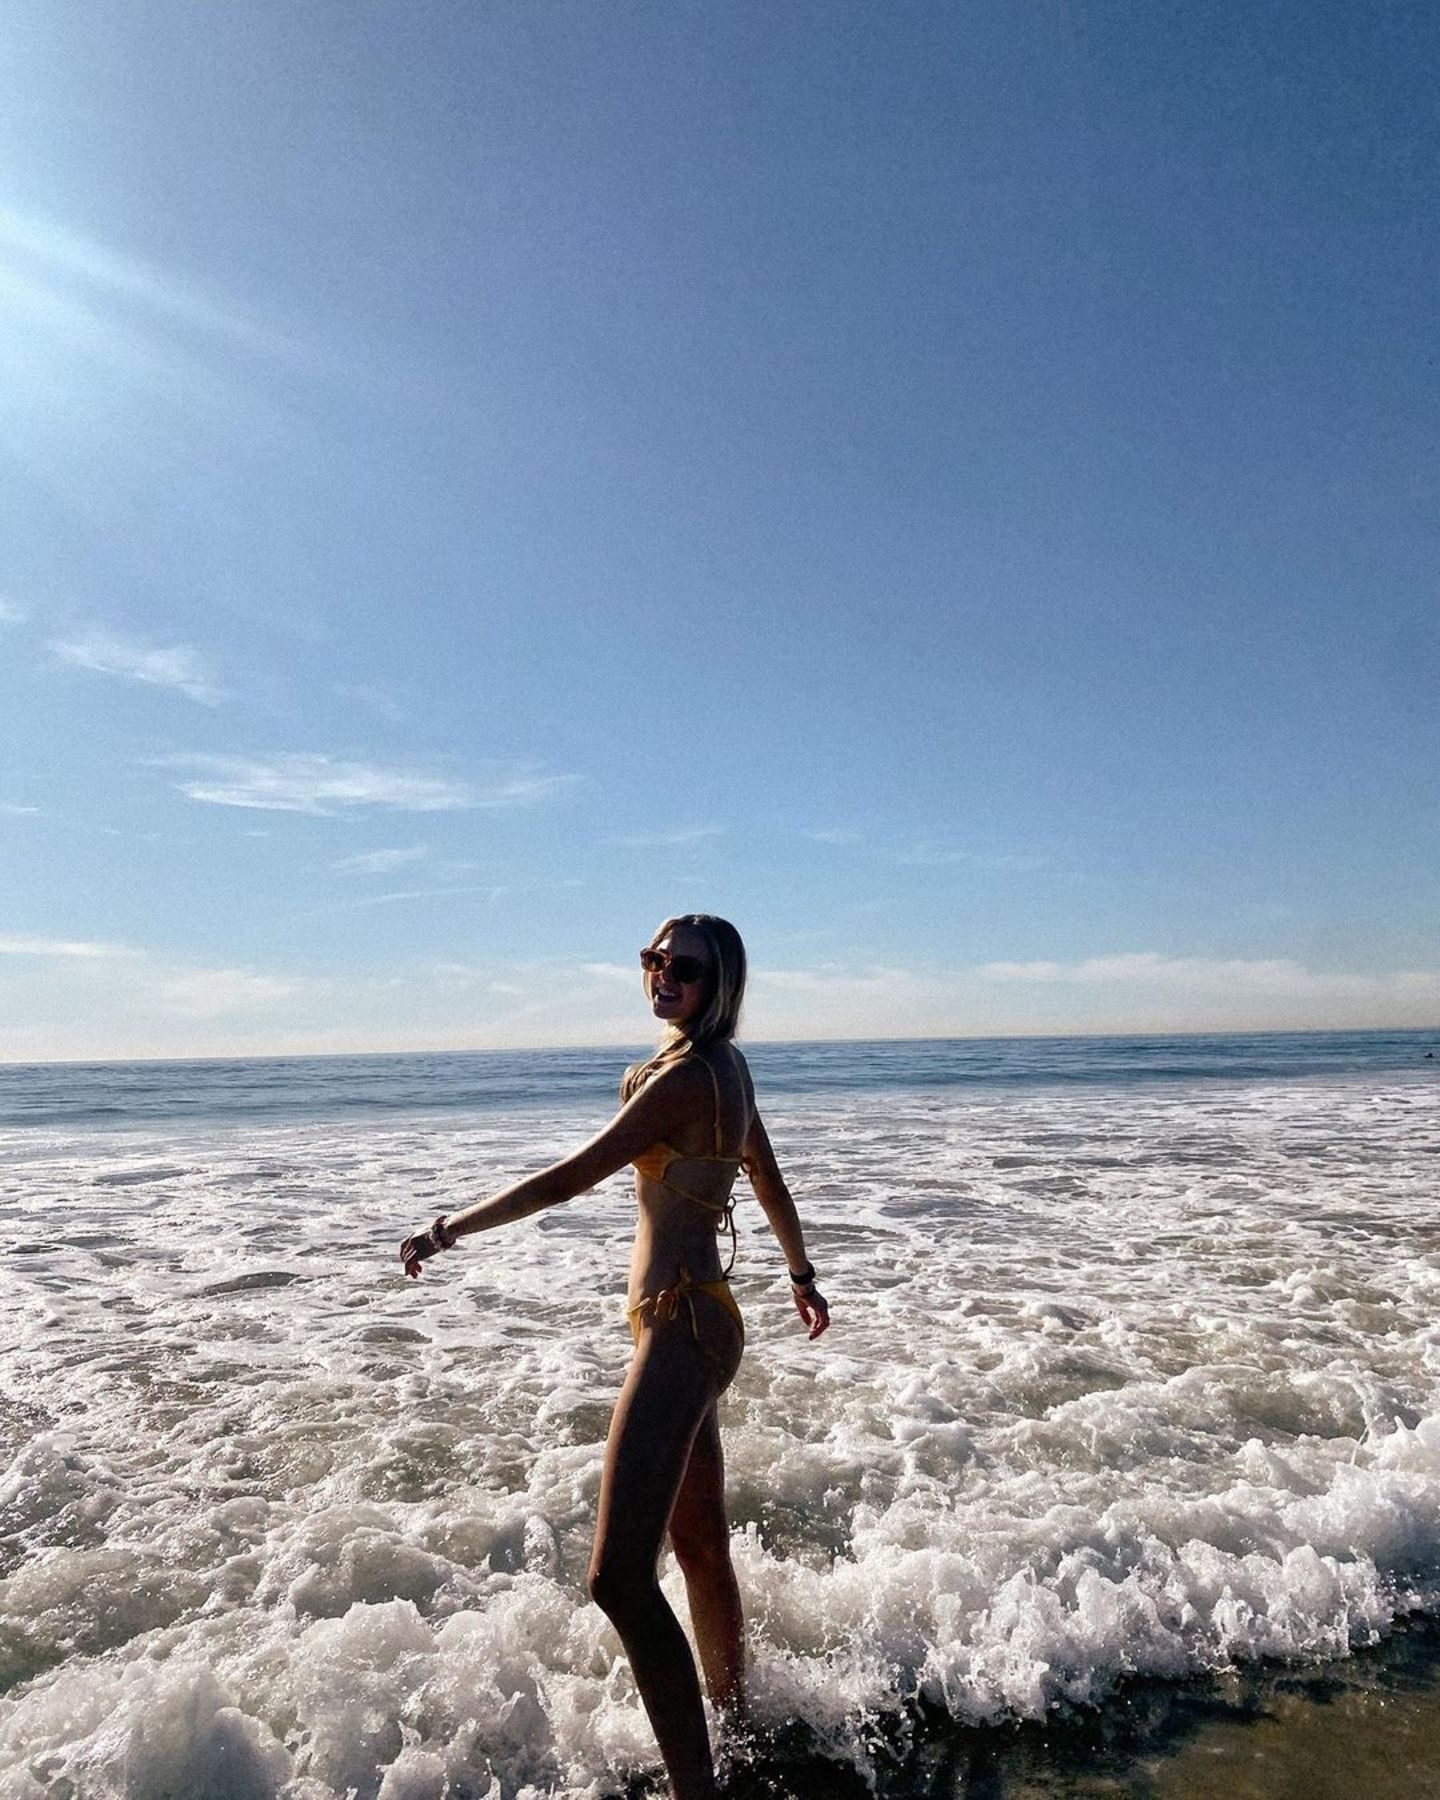 Da scheint jemand seinen Urlaub zu genießen! Lilly Krug schickt sommerliche Grüße vom Strand. Gut gelaunt schreibt sie dazu: "In meinem früheren Leben muss ich wohl eine Wasser-Kreatur gewesen sein". Gut möglich, der Strand steht ihr nämlich außerordentlich gut.